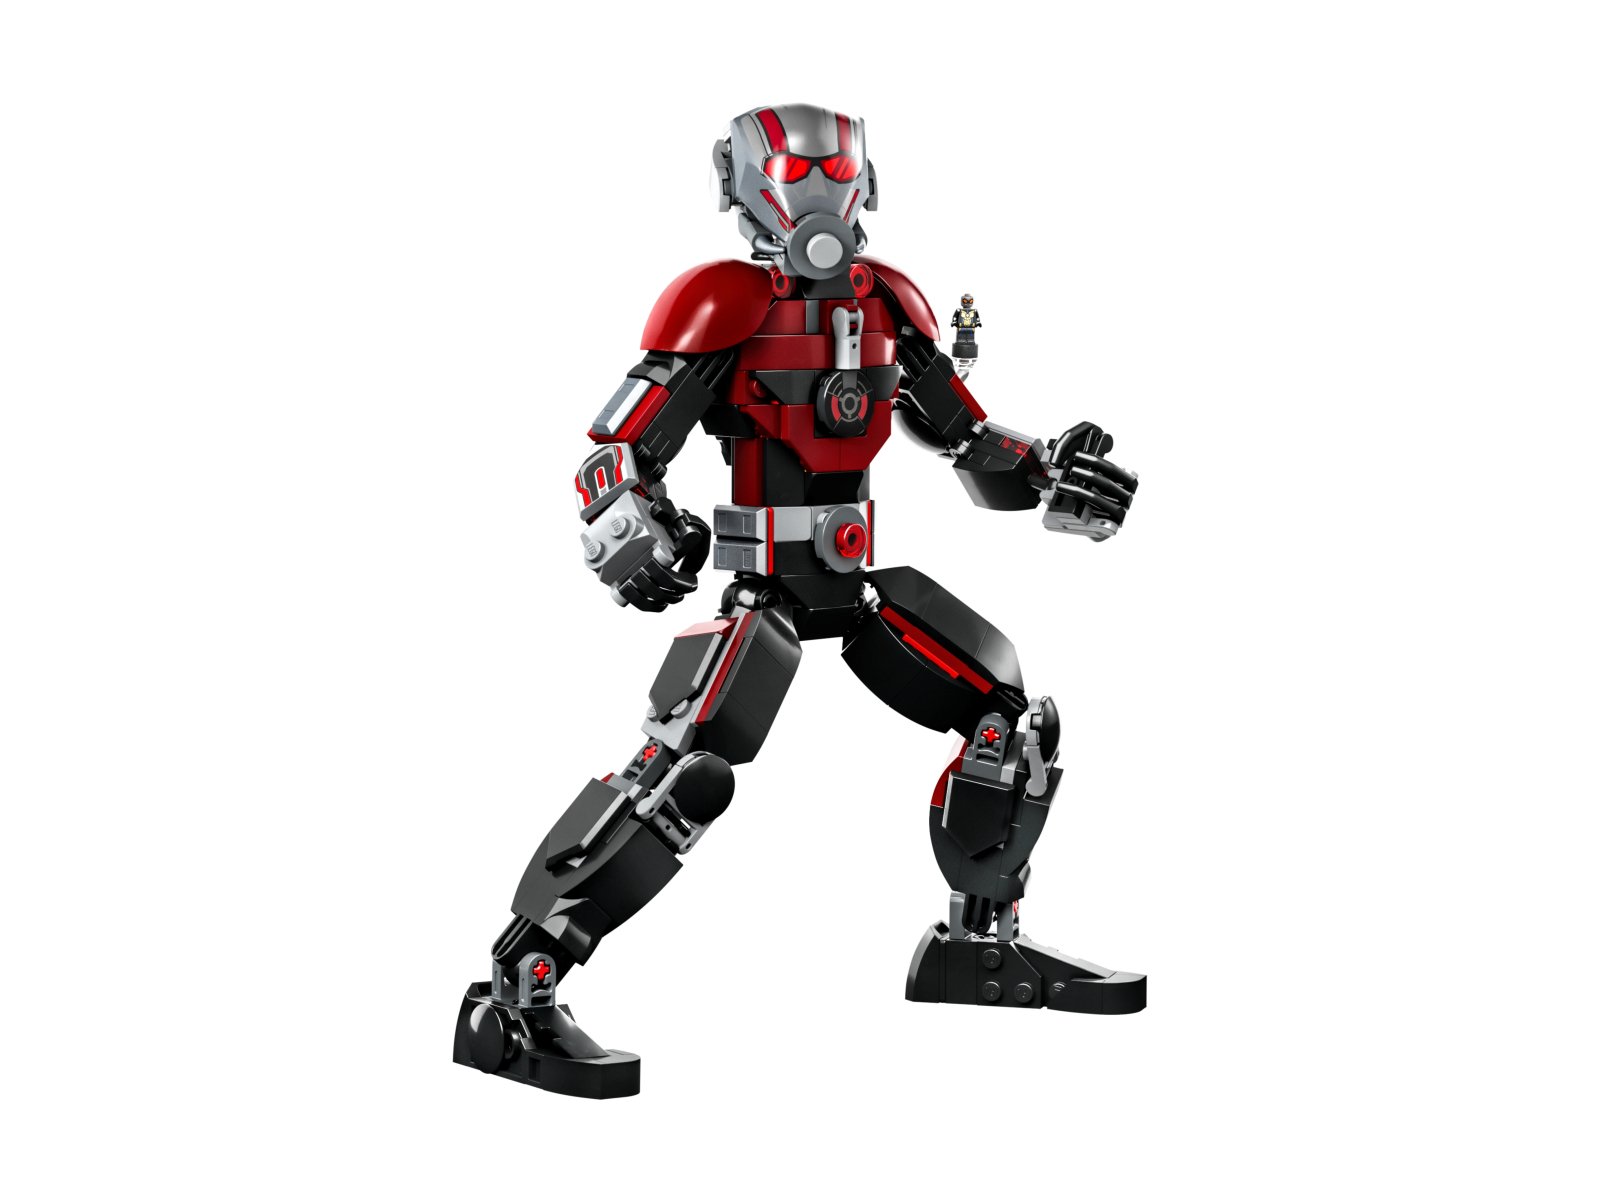 LEGO 76256 Marvel Figurka Ant-Mana do zbudowania